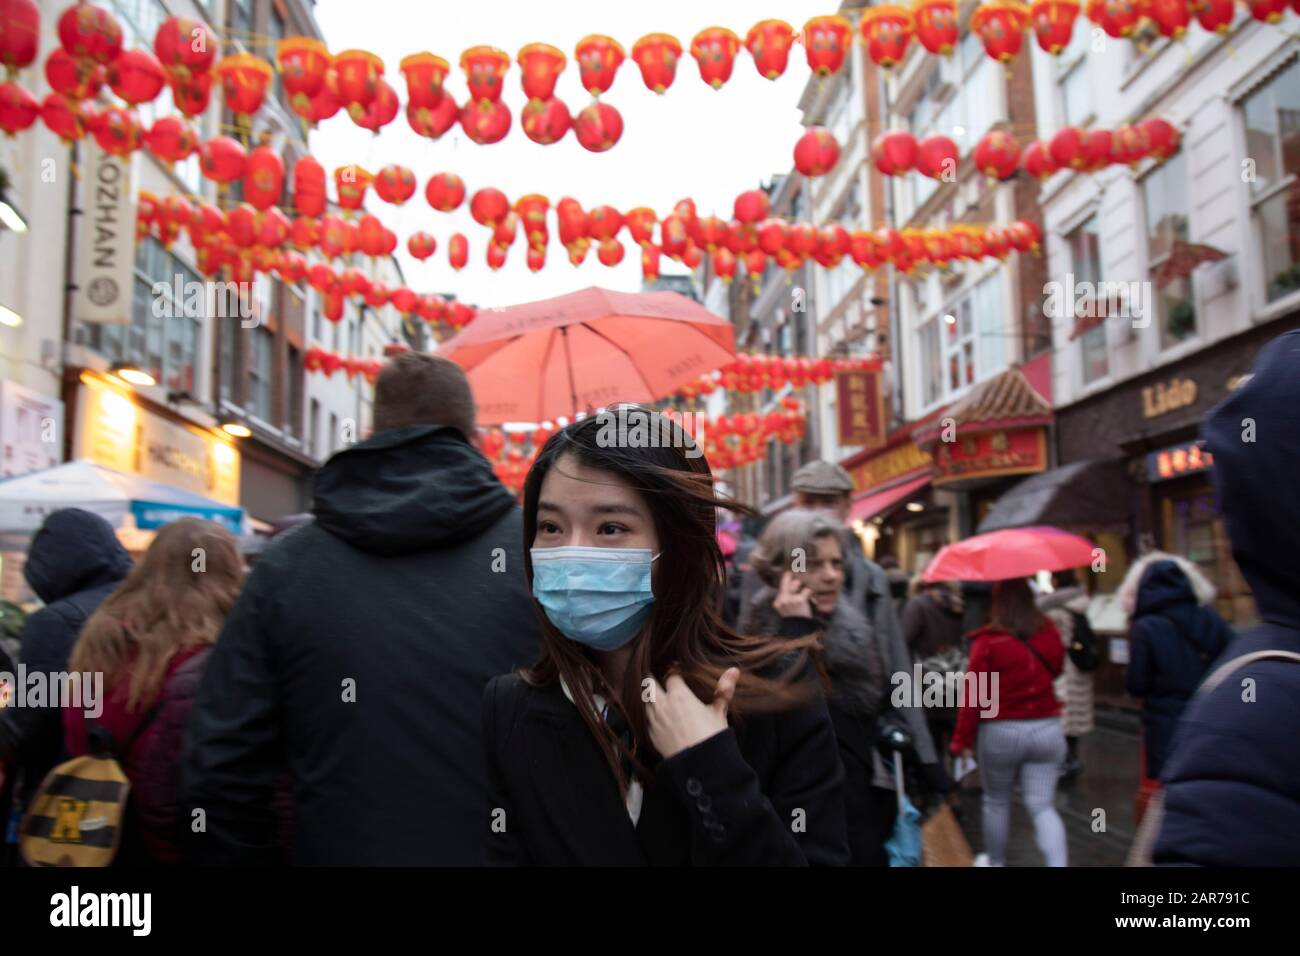 Menschen, die Gesichtsmasken für chinesische Neujahrsfeiern in der Gerrard Street in Chinatown am 26. Januar 2020 in London, England, Großbritannien tragen. Aufgrund des kürzlichen Coronavirus-Ausbruchs trägt eine erhöhte Anzahl von Chinesen/Asiaten und westlichen Menschen Gesichtsmasken in der Öffentlichkeit, obwohl NHS Englands Ratschläge gibt, dass das Risiko, die Krankheit in Großbritannien zu bekommen, gering ist. Der Wuhan-Roman Coronavirus WN-COV ist eine neue Atemwegserkrankung, die beim Menschen bisher nicht beobachtet wurde. Jedes Jahr versammeln sich lokale chinesische Gemeinden und Londoner in diesem berühmten Gebiet im Zentrum Londons, das den Schwerpunkt der Feierlichkeiten für Th bildet Stockfoto